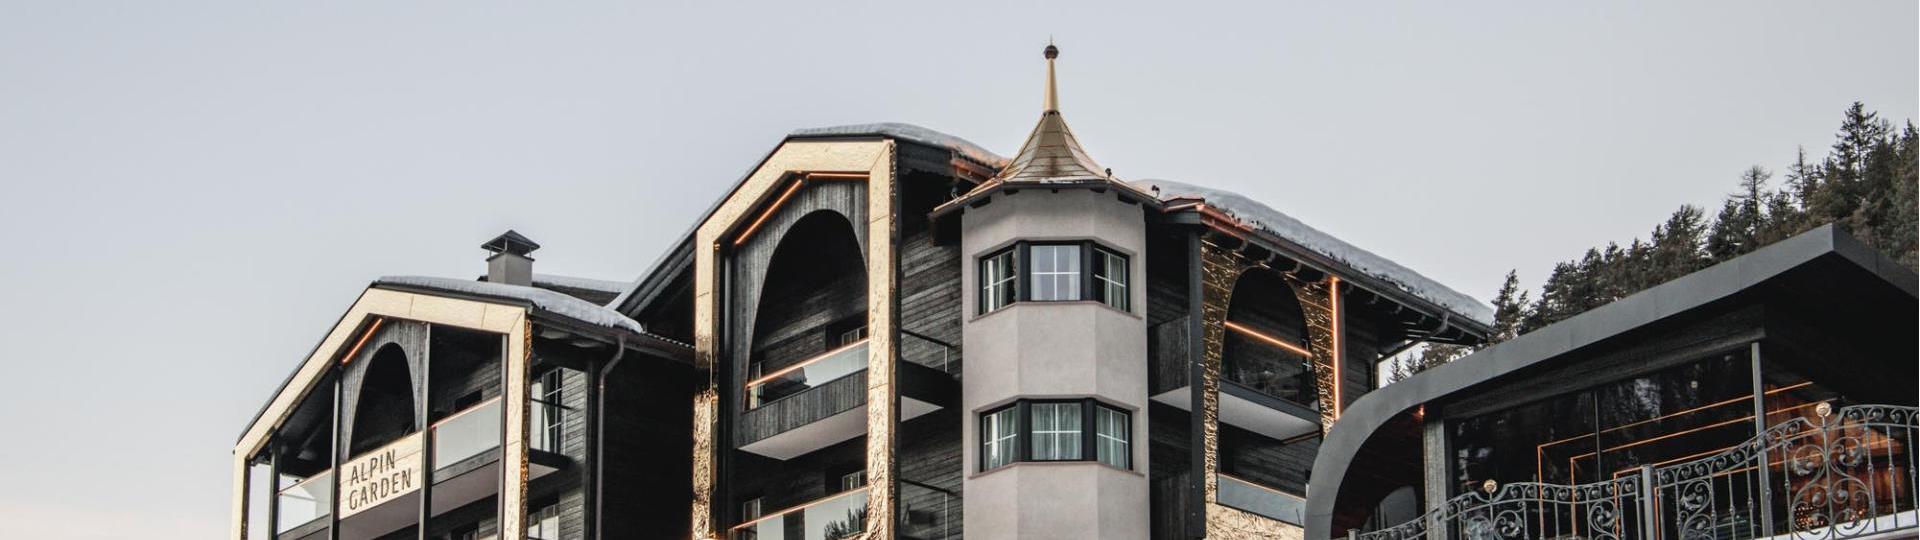 Alpin Garden design hotel in the Dolomites